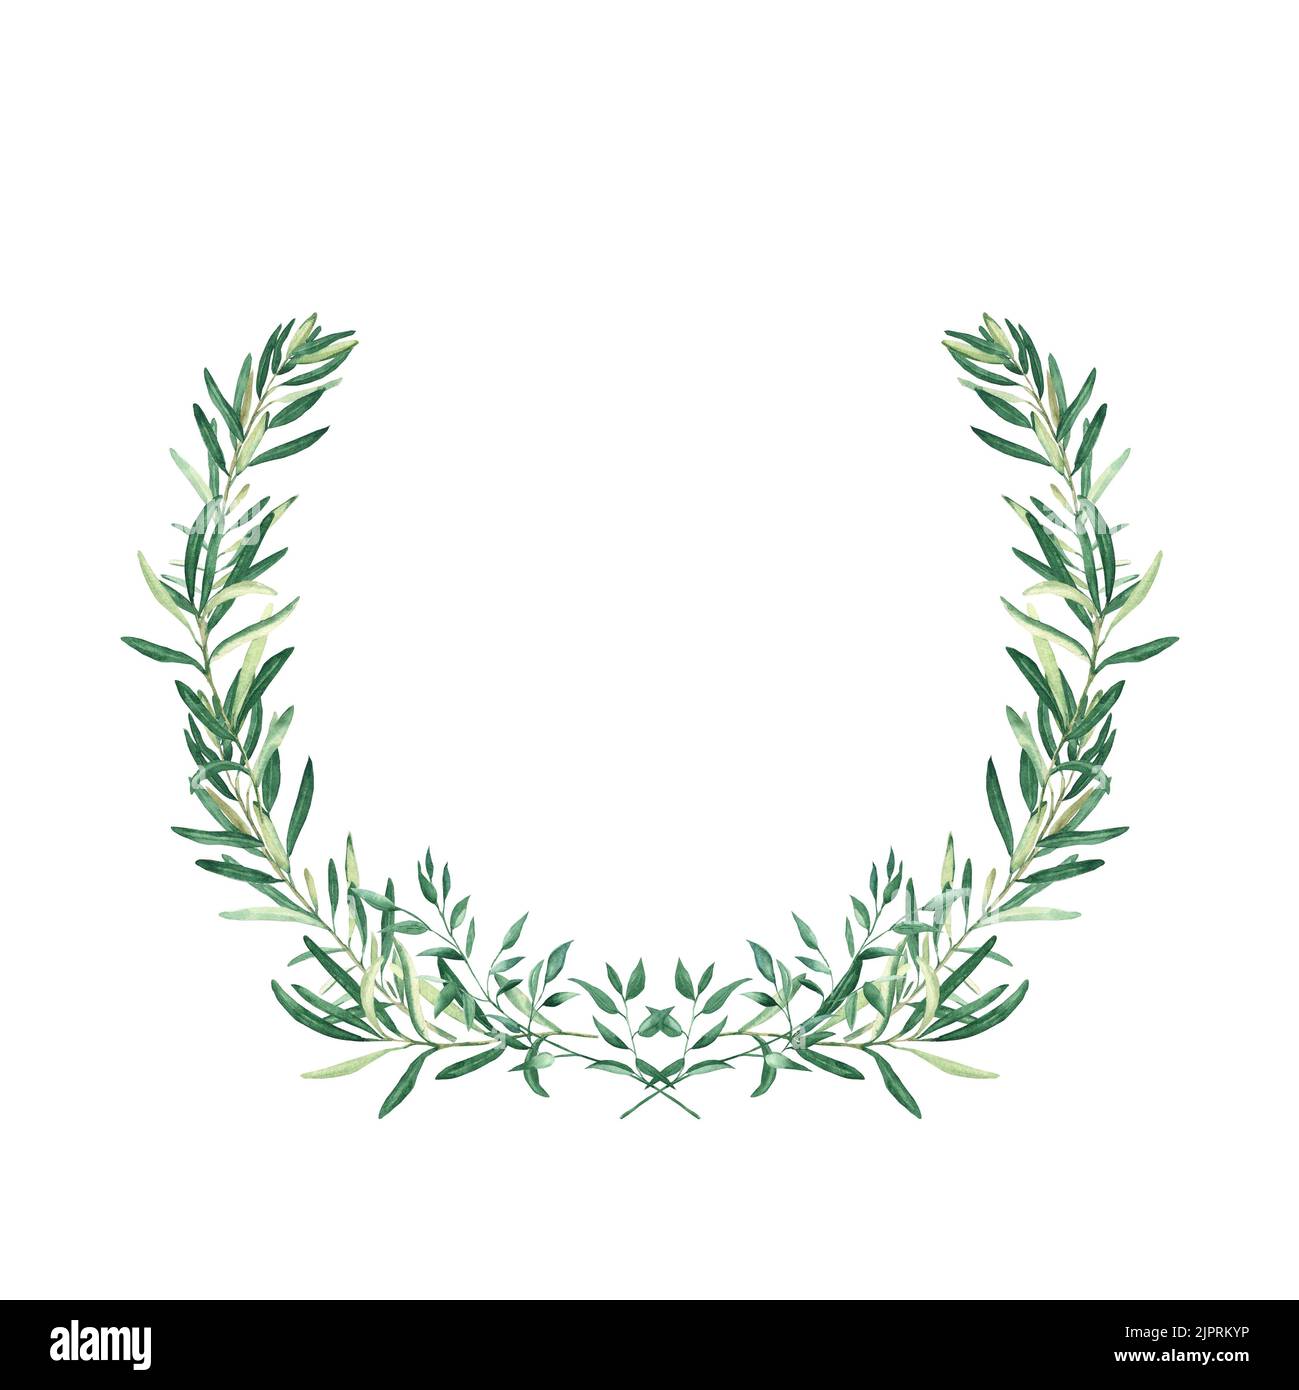 Wasserfarbener olivfarbener Kranz mit Pistazien-Zweigen. Isoliert auf weißem Hintergrund. Handgezeichnete botanische Illustration von sportlichen Leistungen, Auszeichnungen und Stockfoto